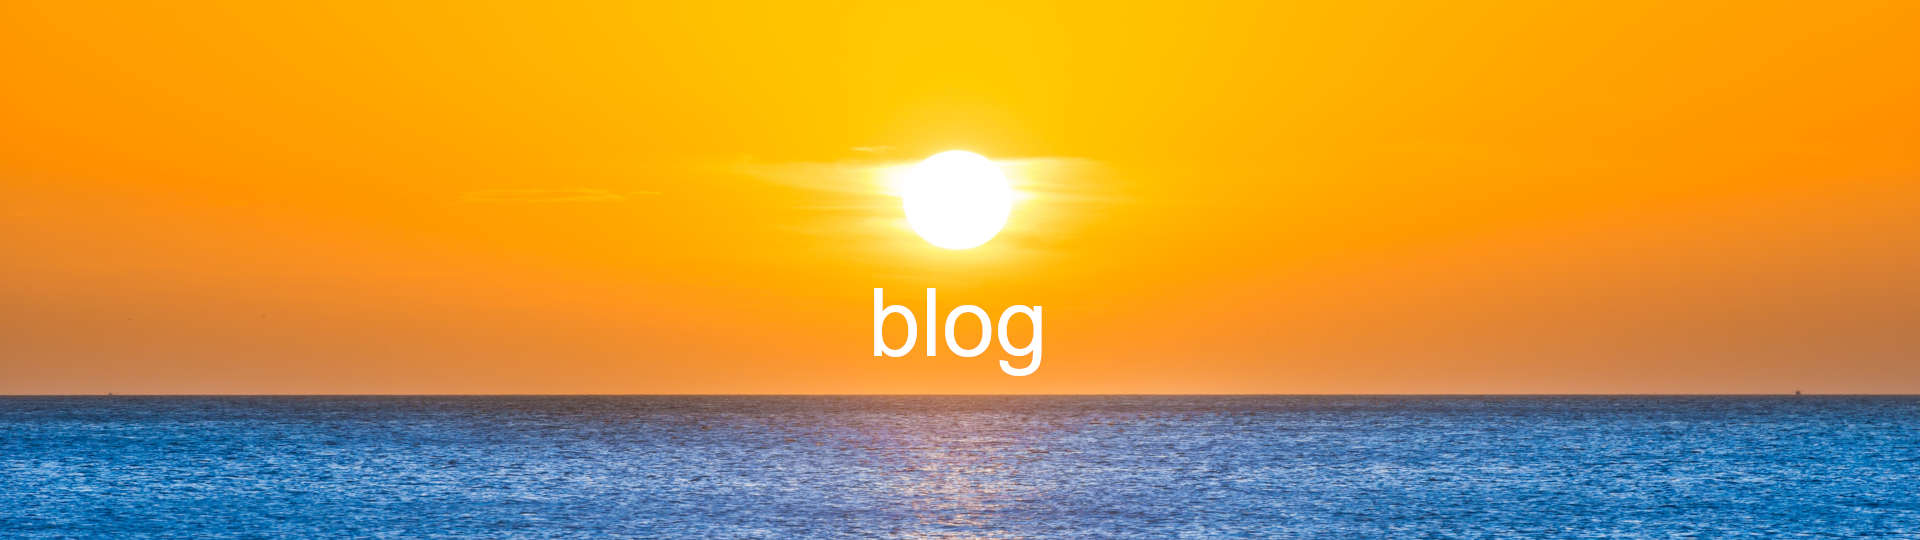 Sonnenaufgang über dem Meer, so erfrischend wie neue Blogposts von Eheberatung / Paartherapie und seelische Gesundheit